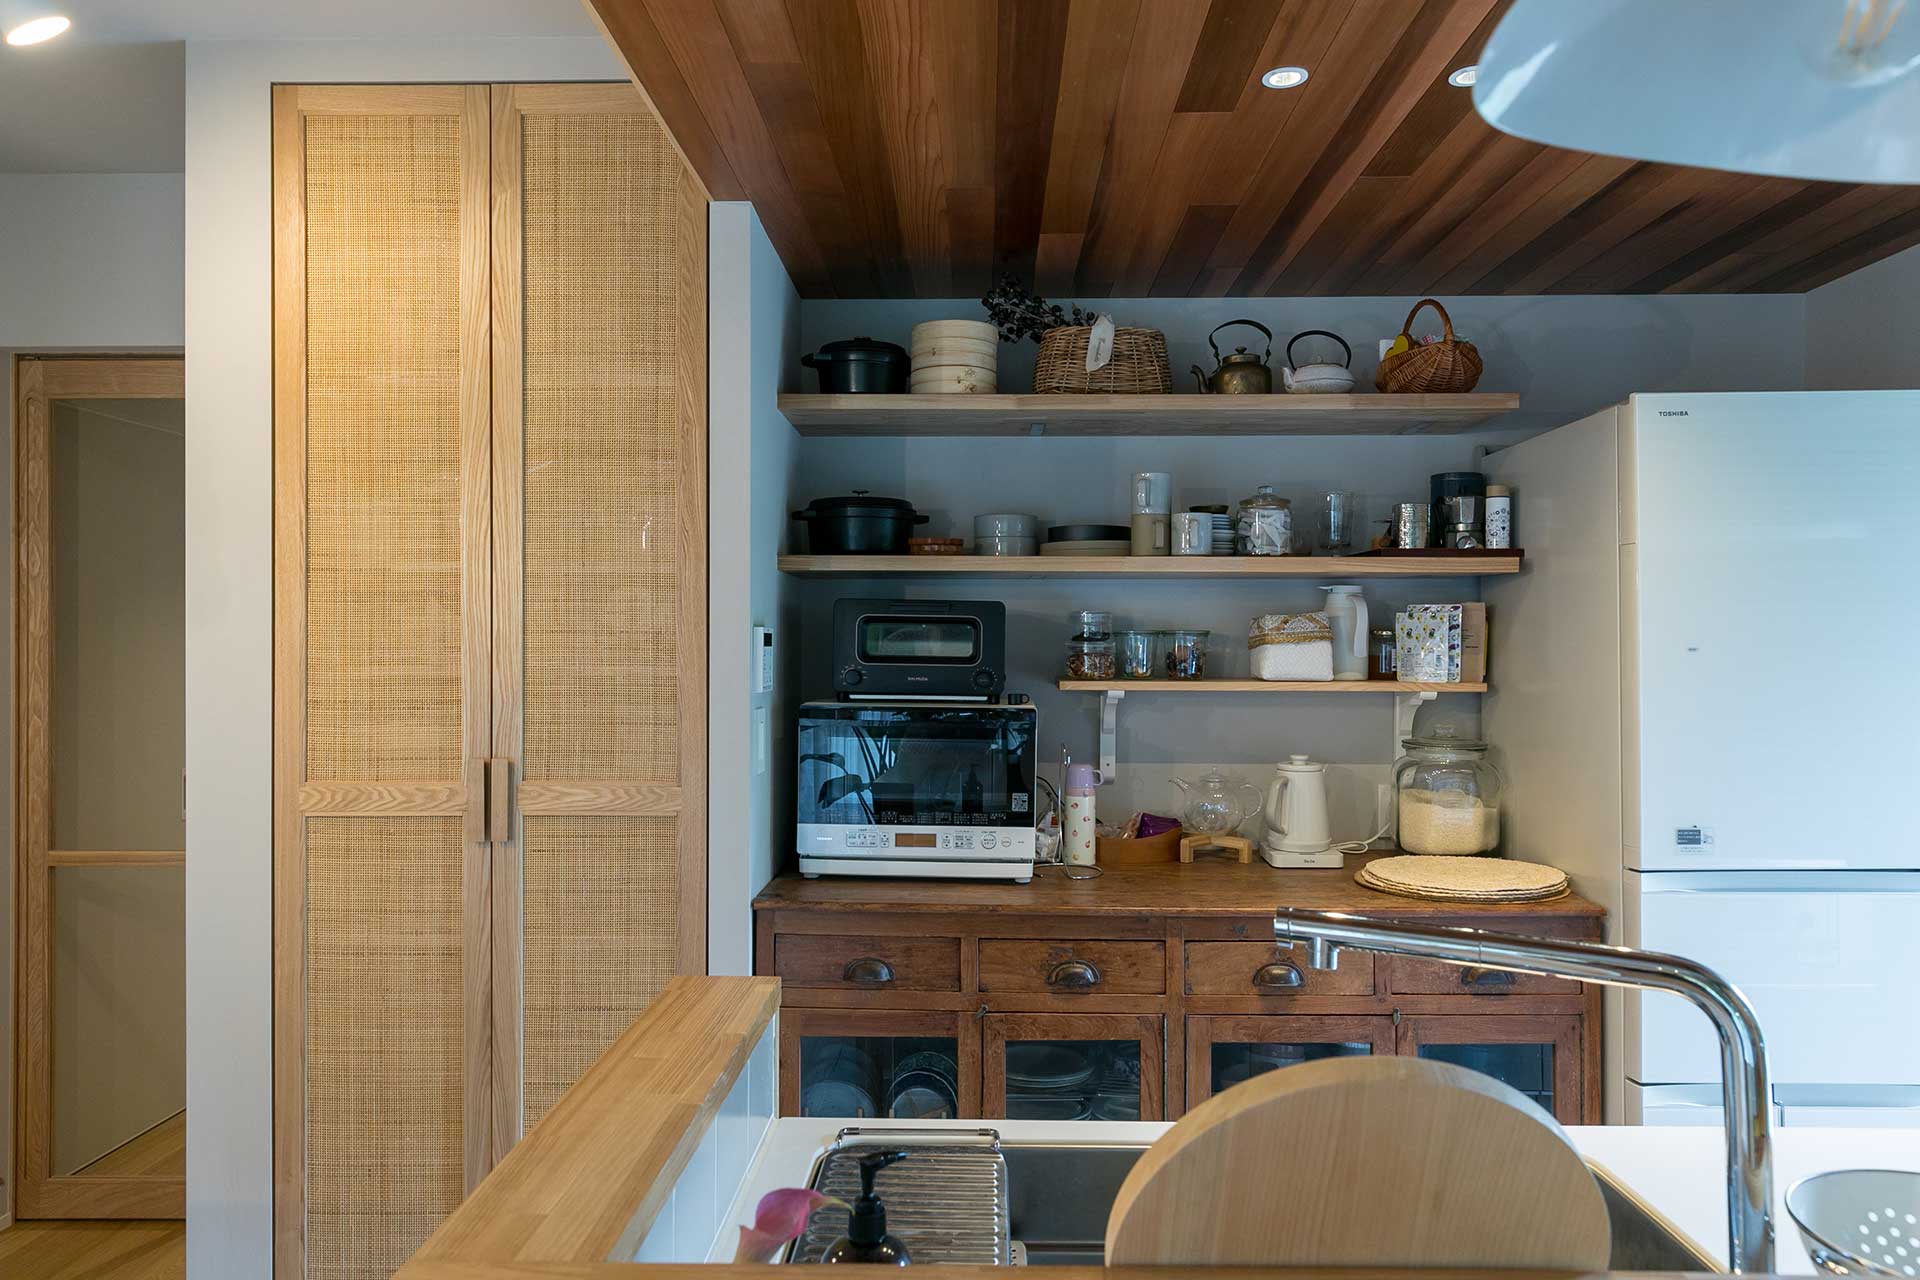 キッチンの背面はアンティークキャビネットのサイズに合わせ設計。グレーを基調とした空間の中にレッドシダーの天井材があることで、一層キャビネットが馴染む。